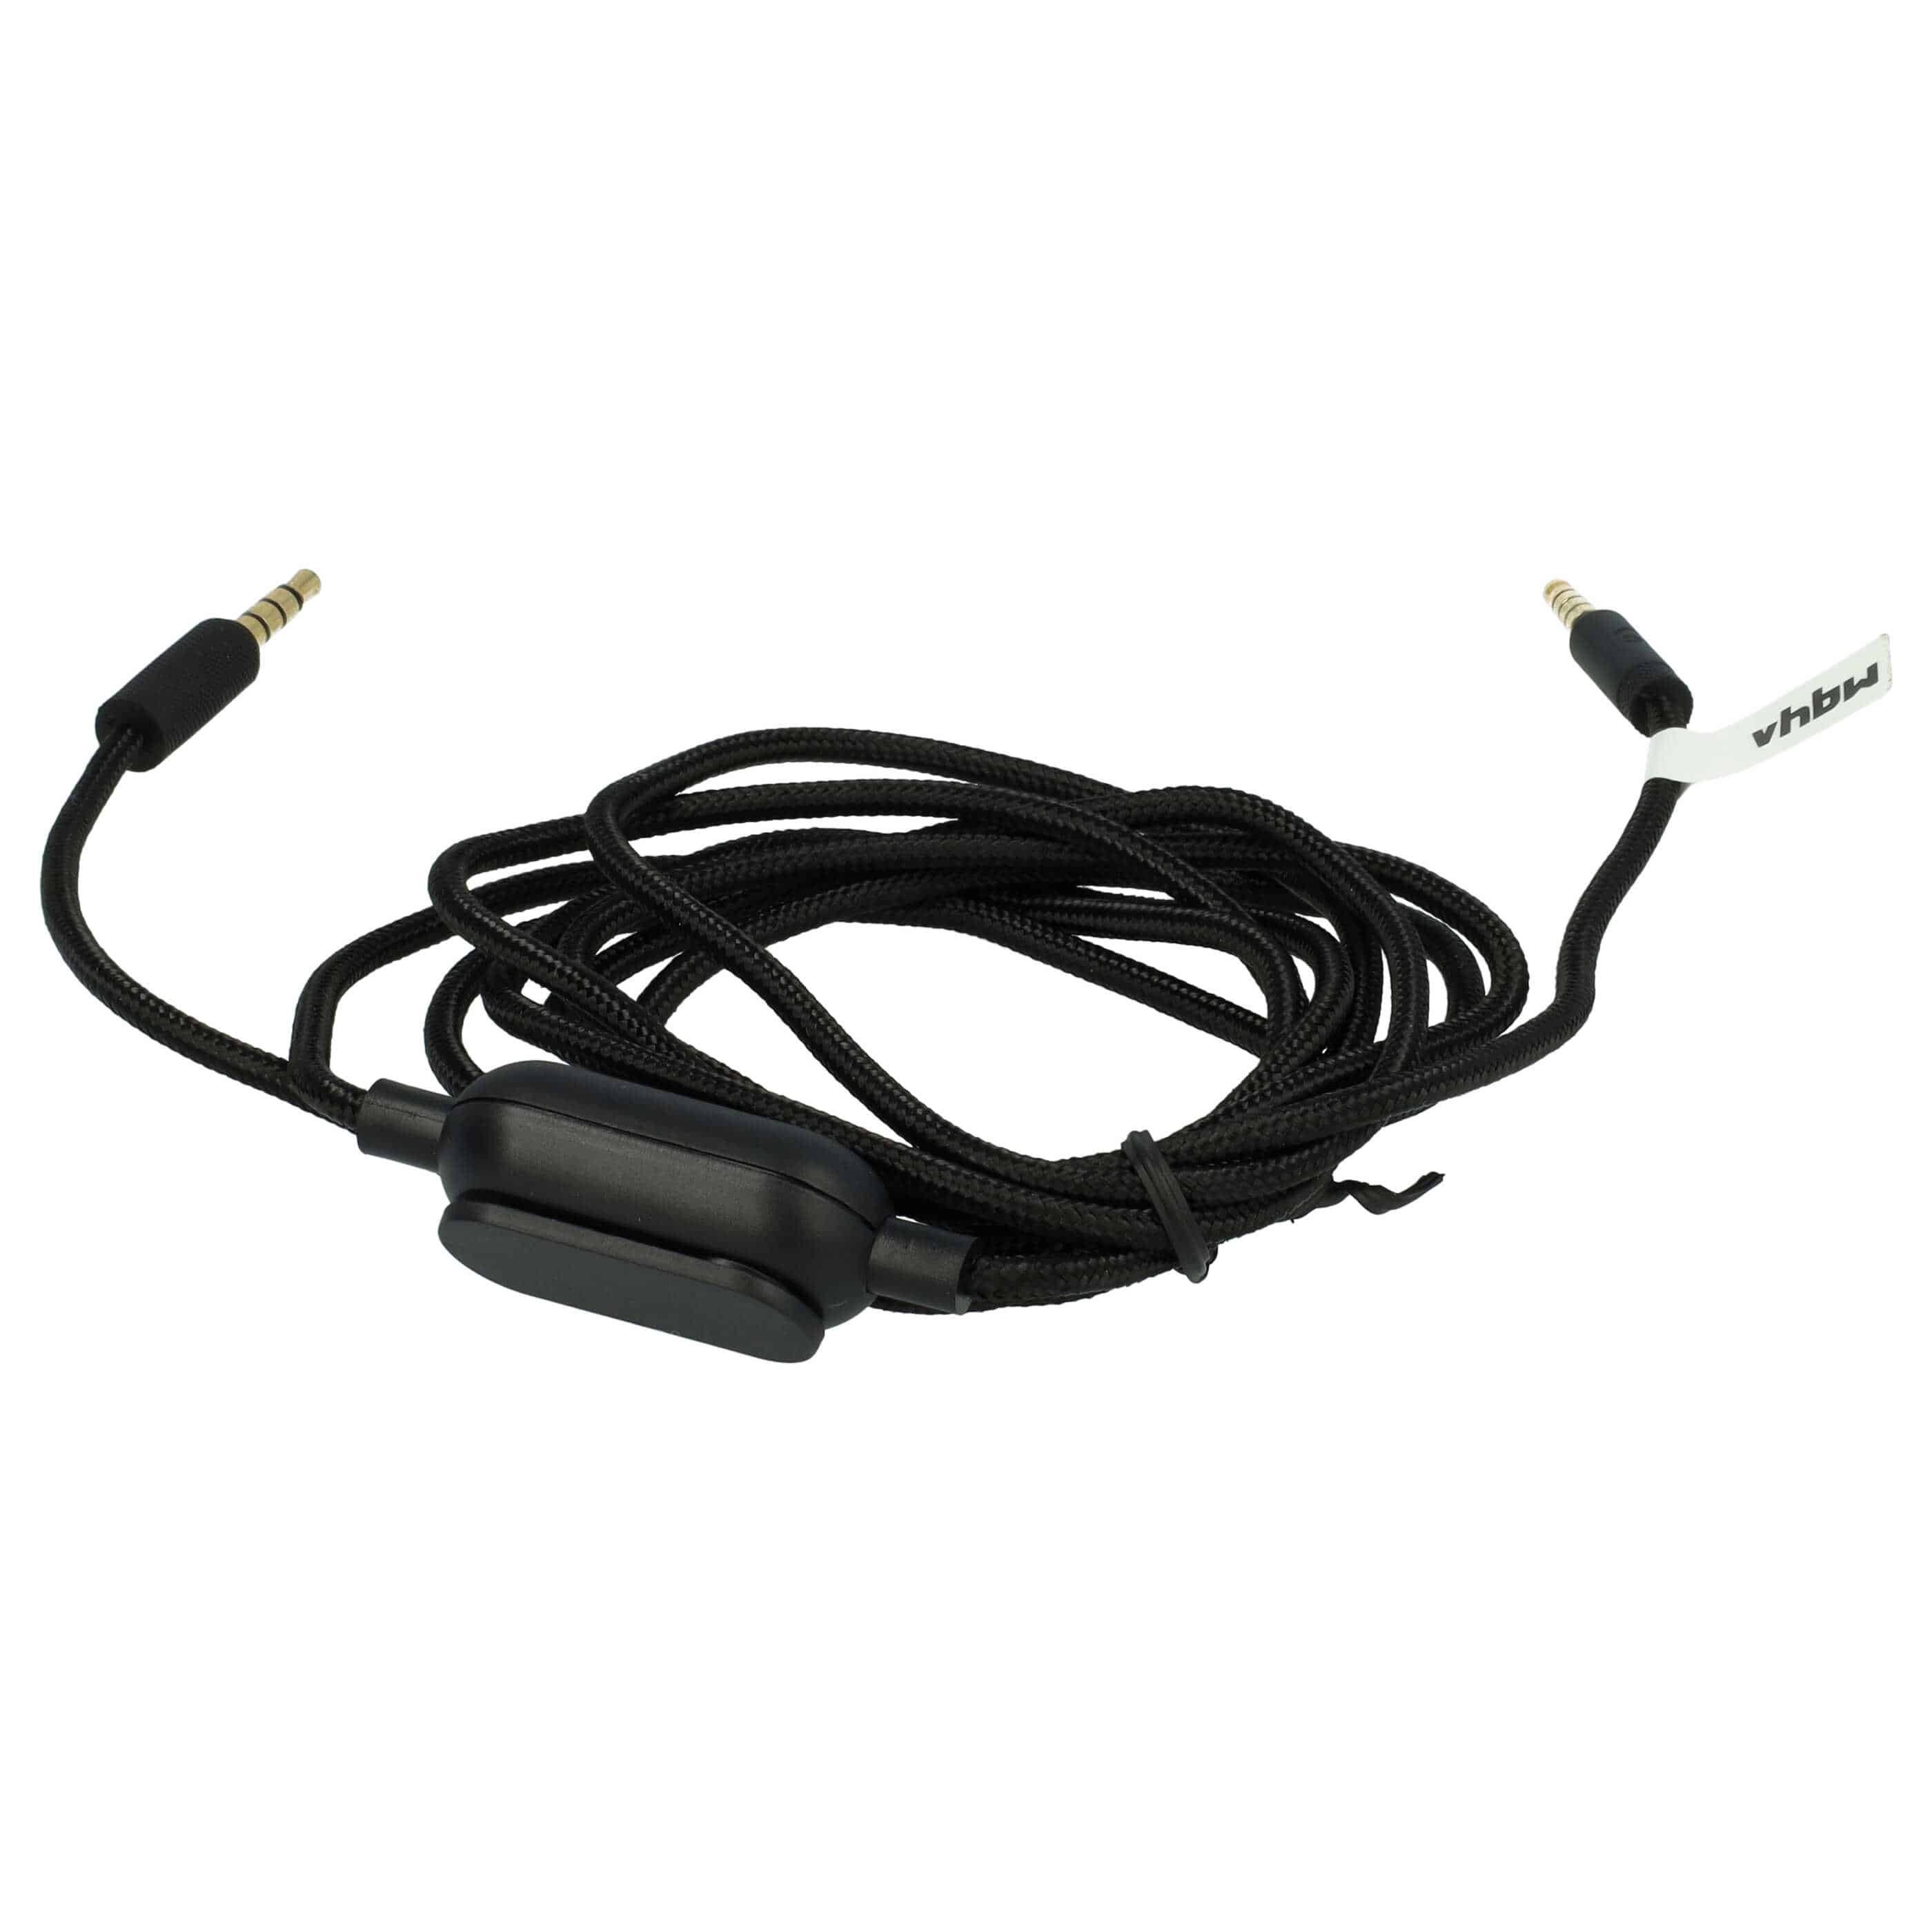 Kabel do słuchawek Logitech G Pro, G Pro X, G233, G433 - czarny, 200 cm